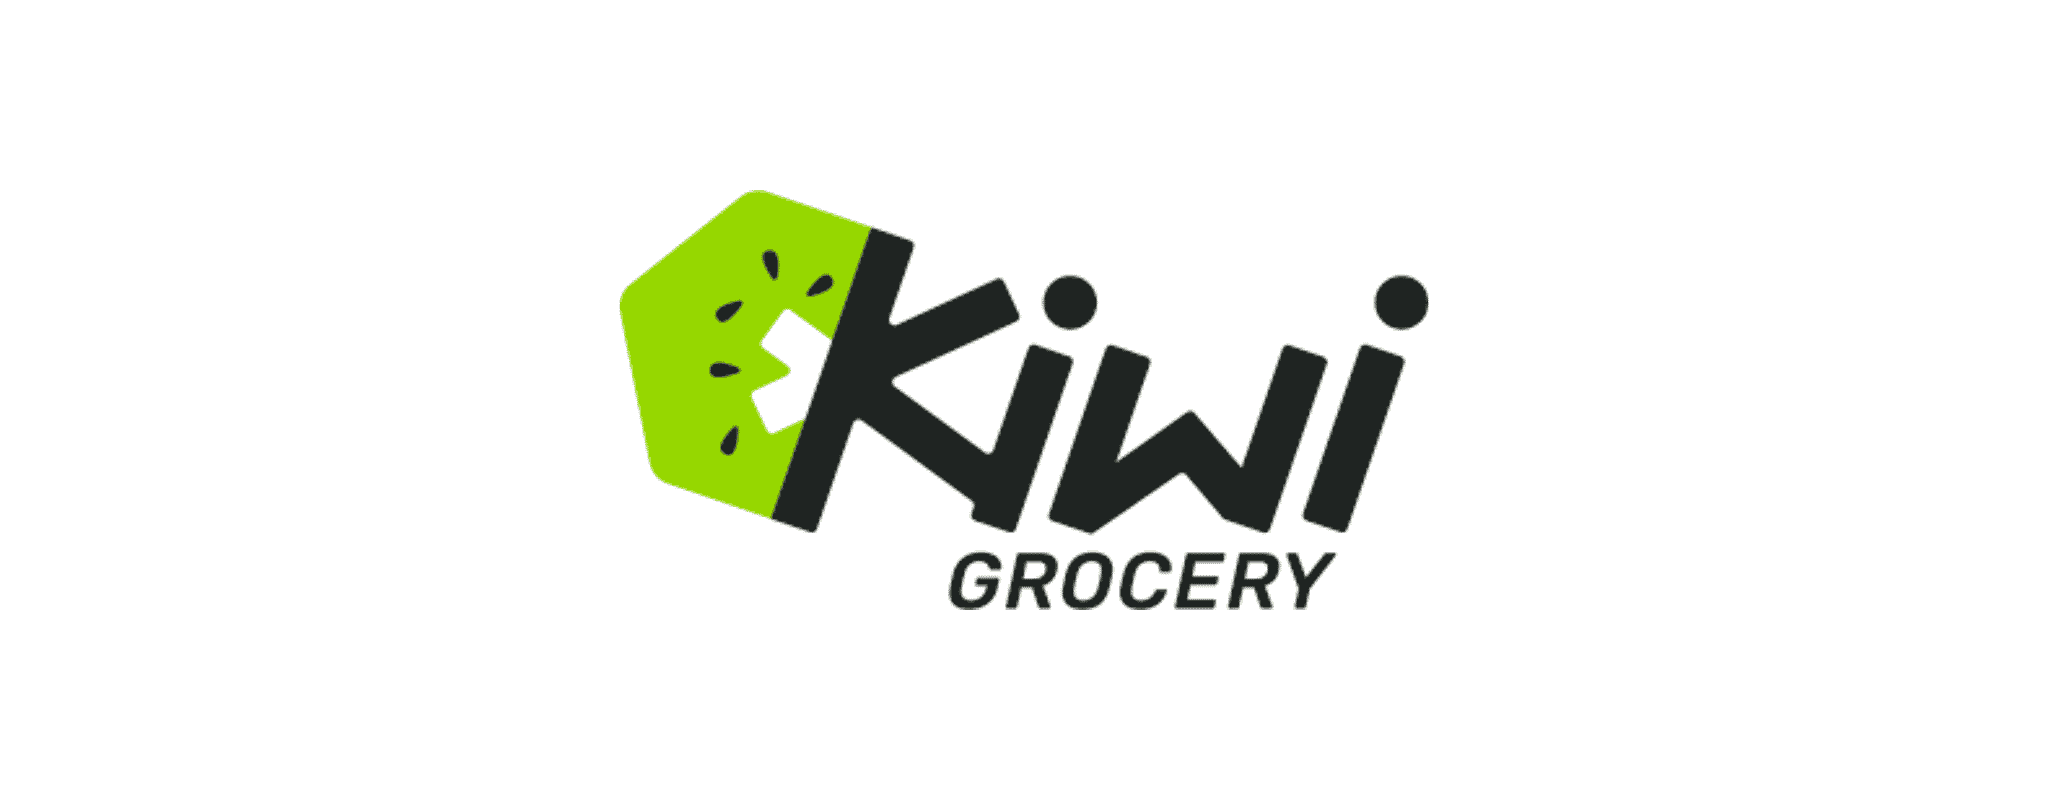 Kiwi Grocery logo